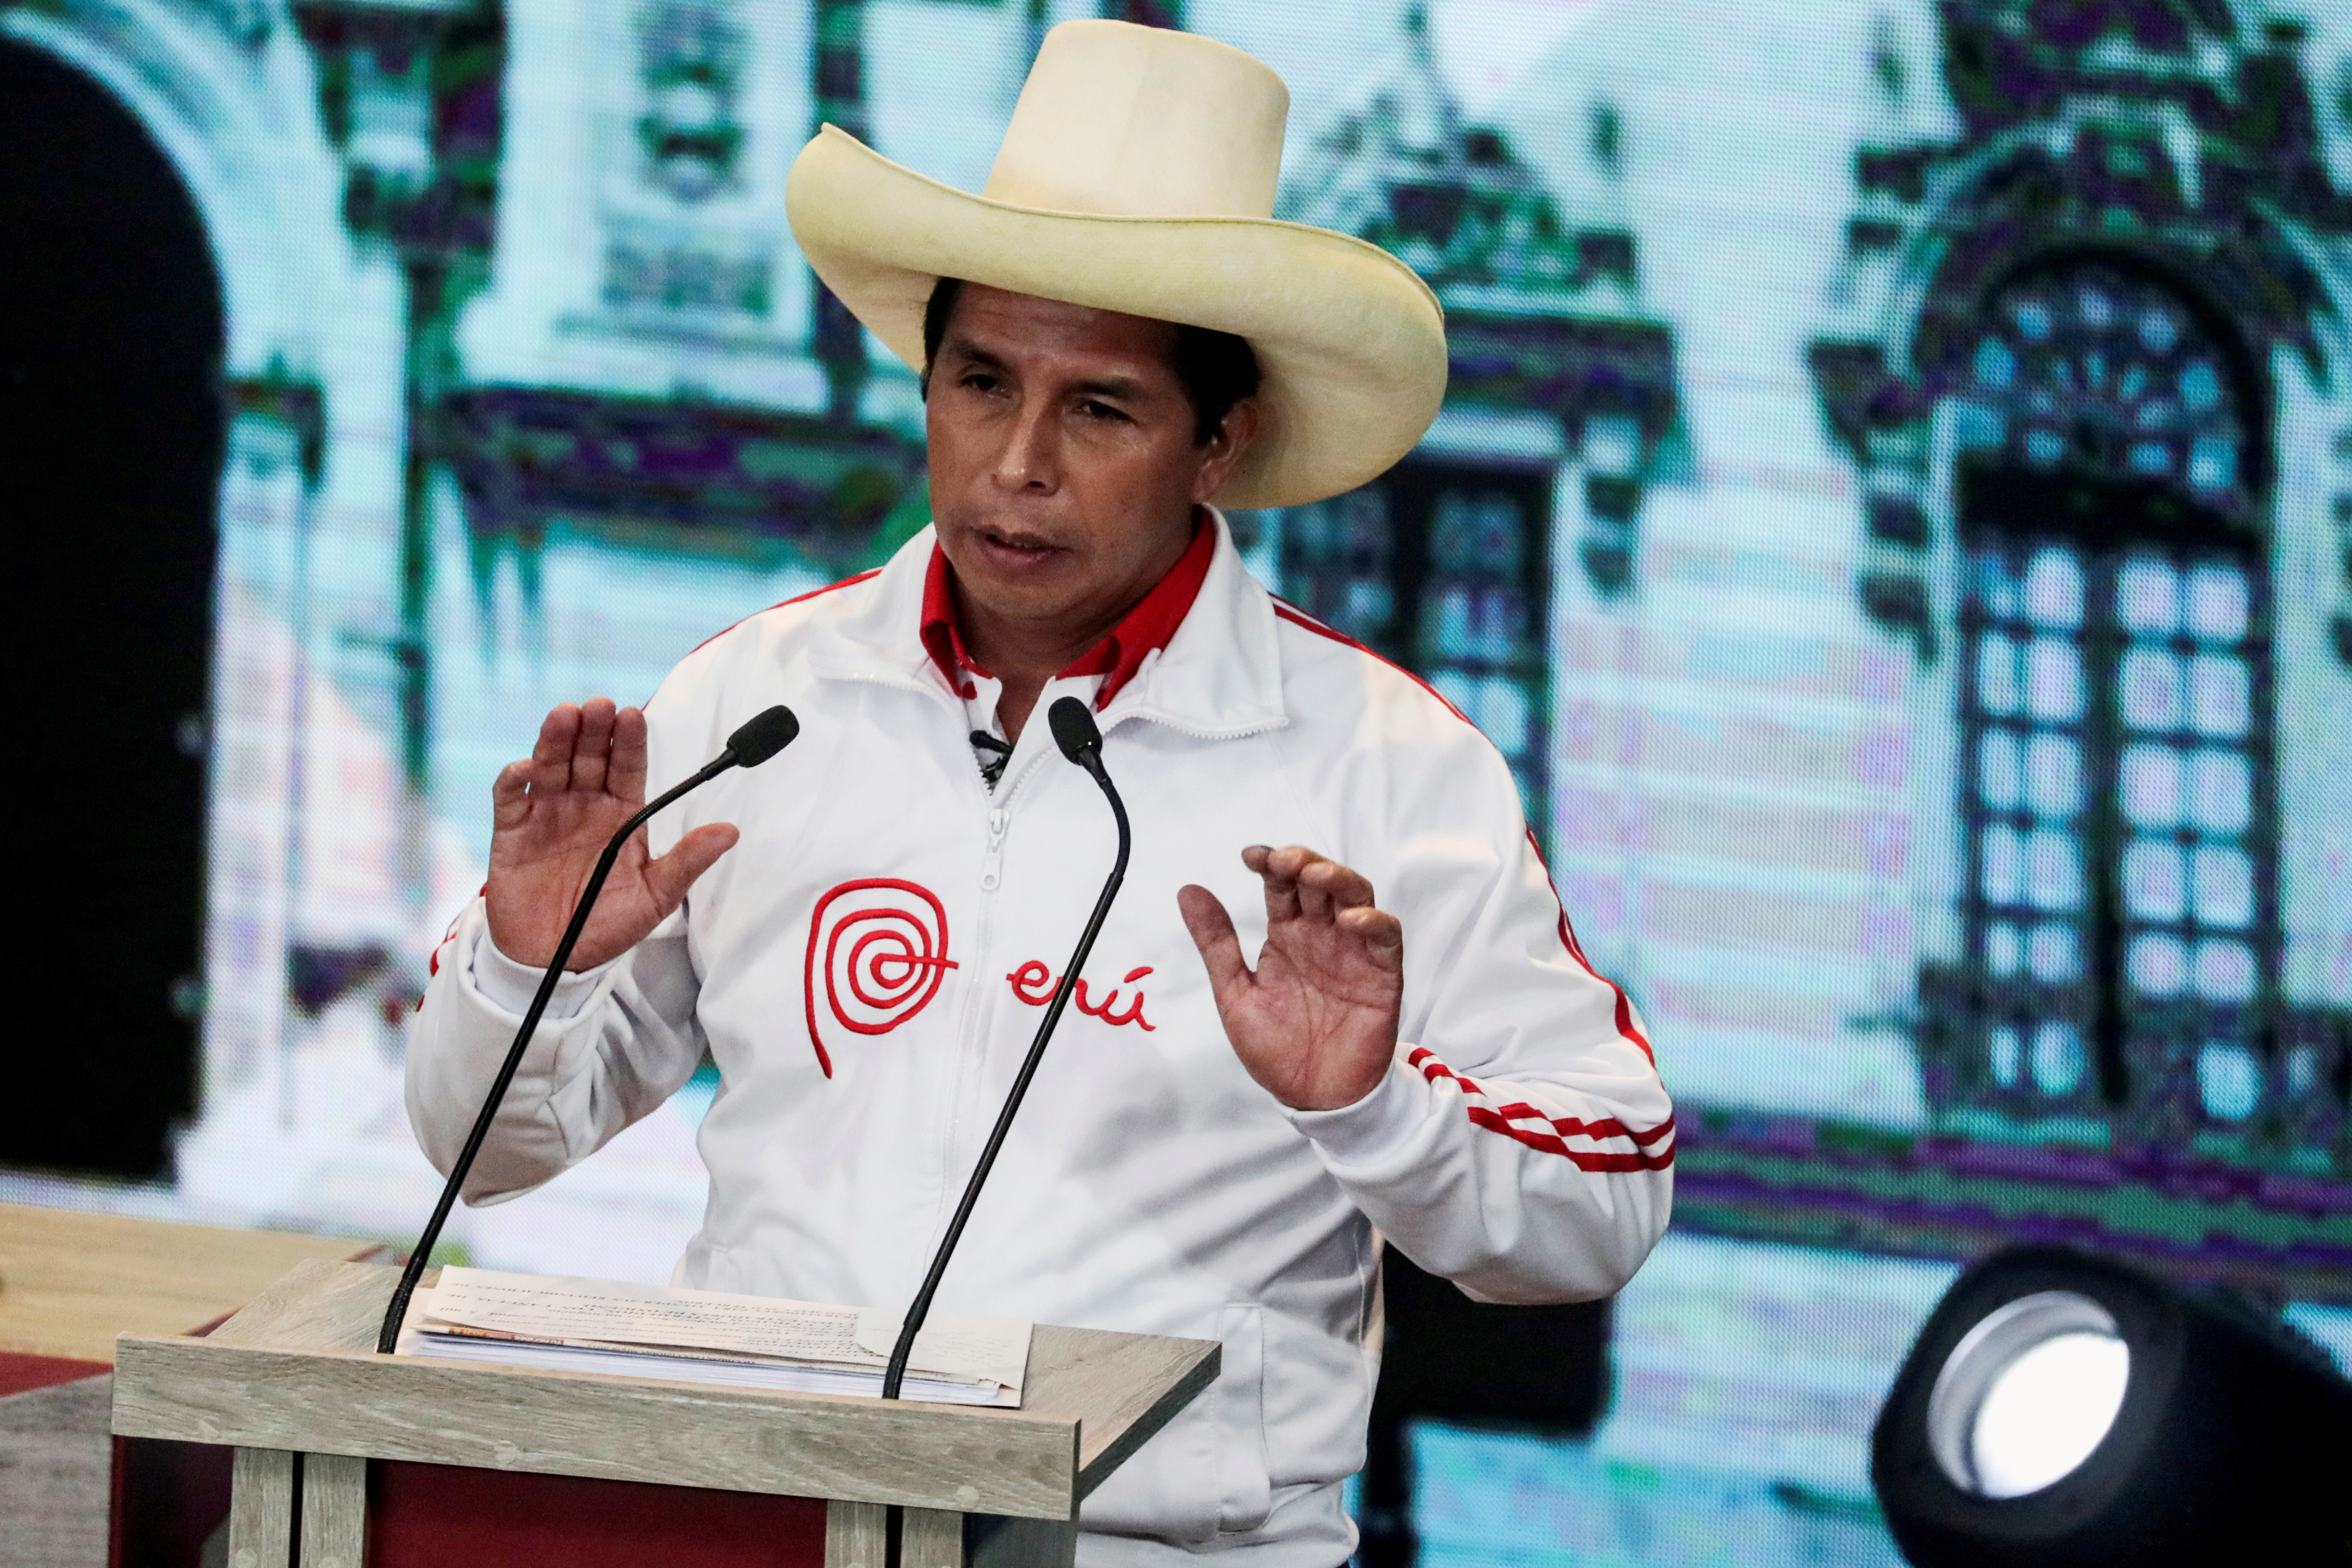 Peru's Pedro Castillo gestures during a debate in Arequipa